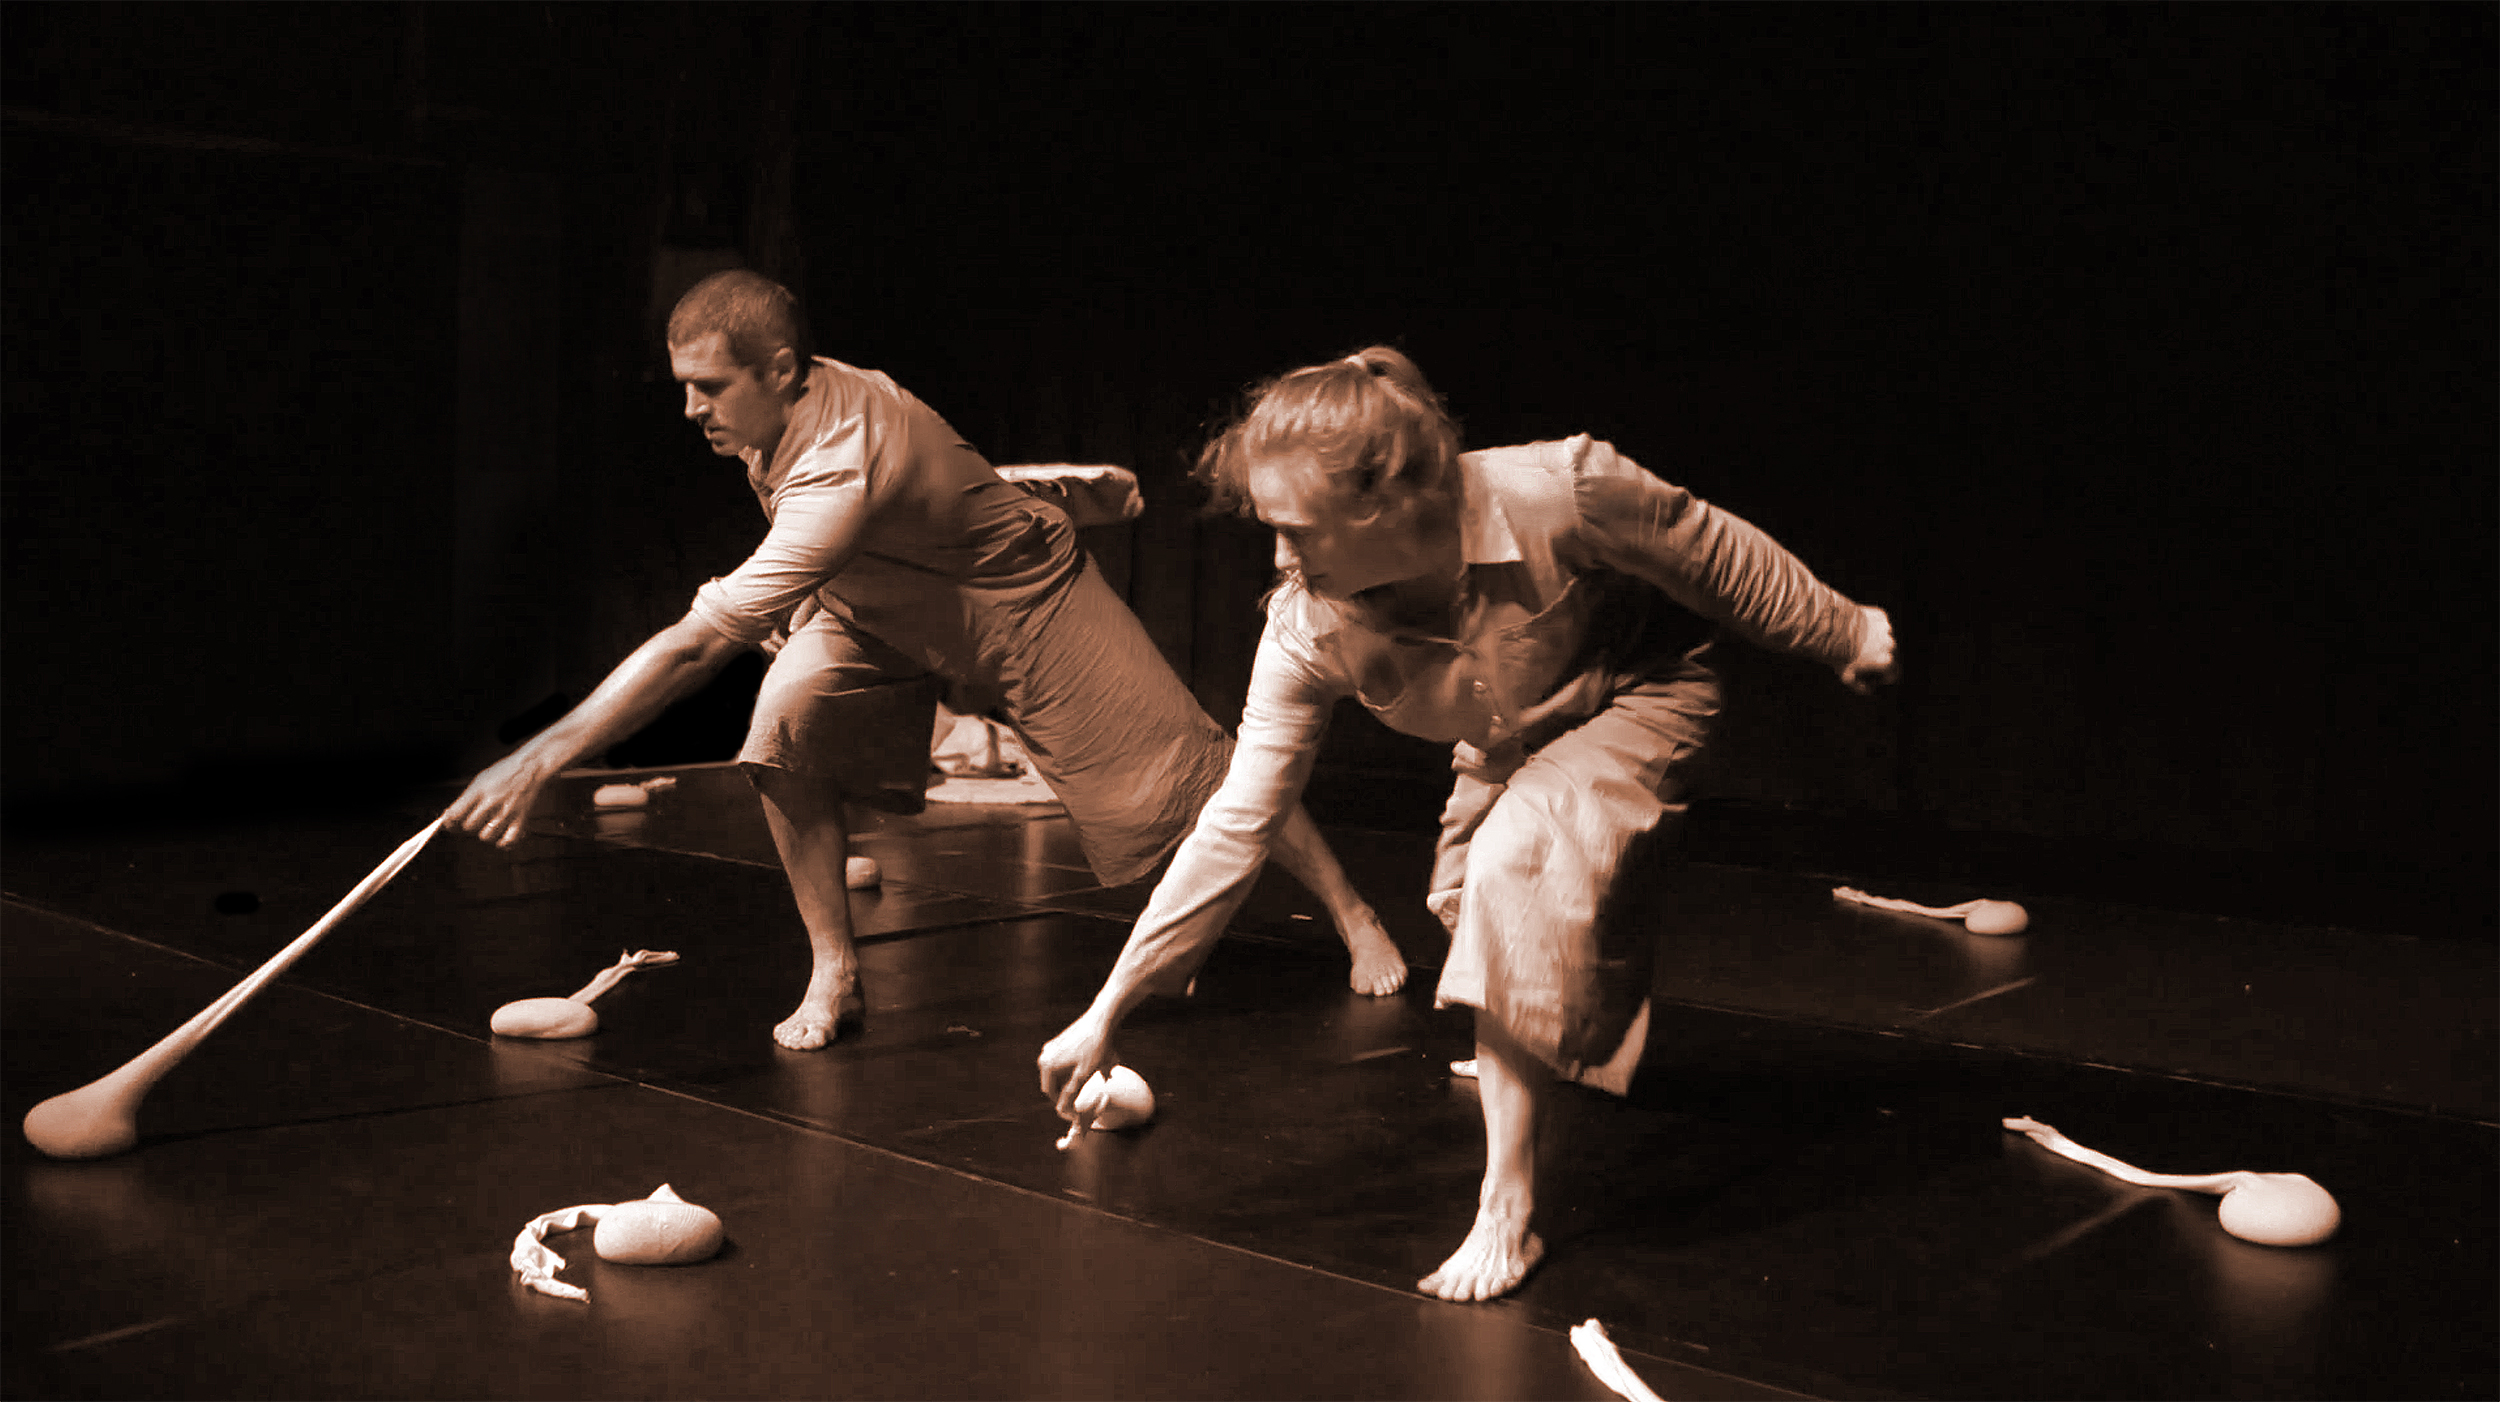 two dancers on stage manipulating sandbag-like props